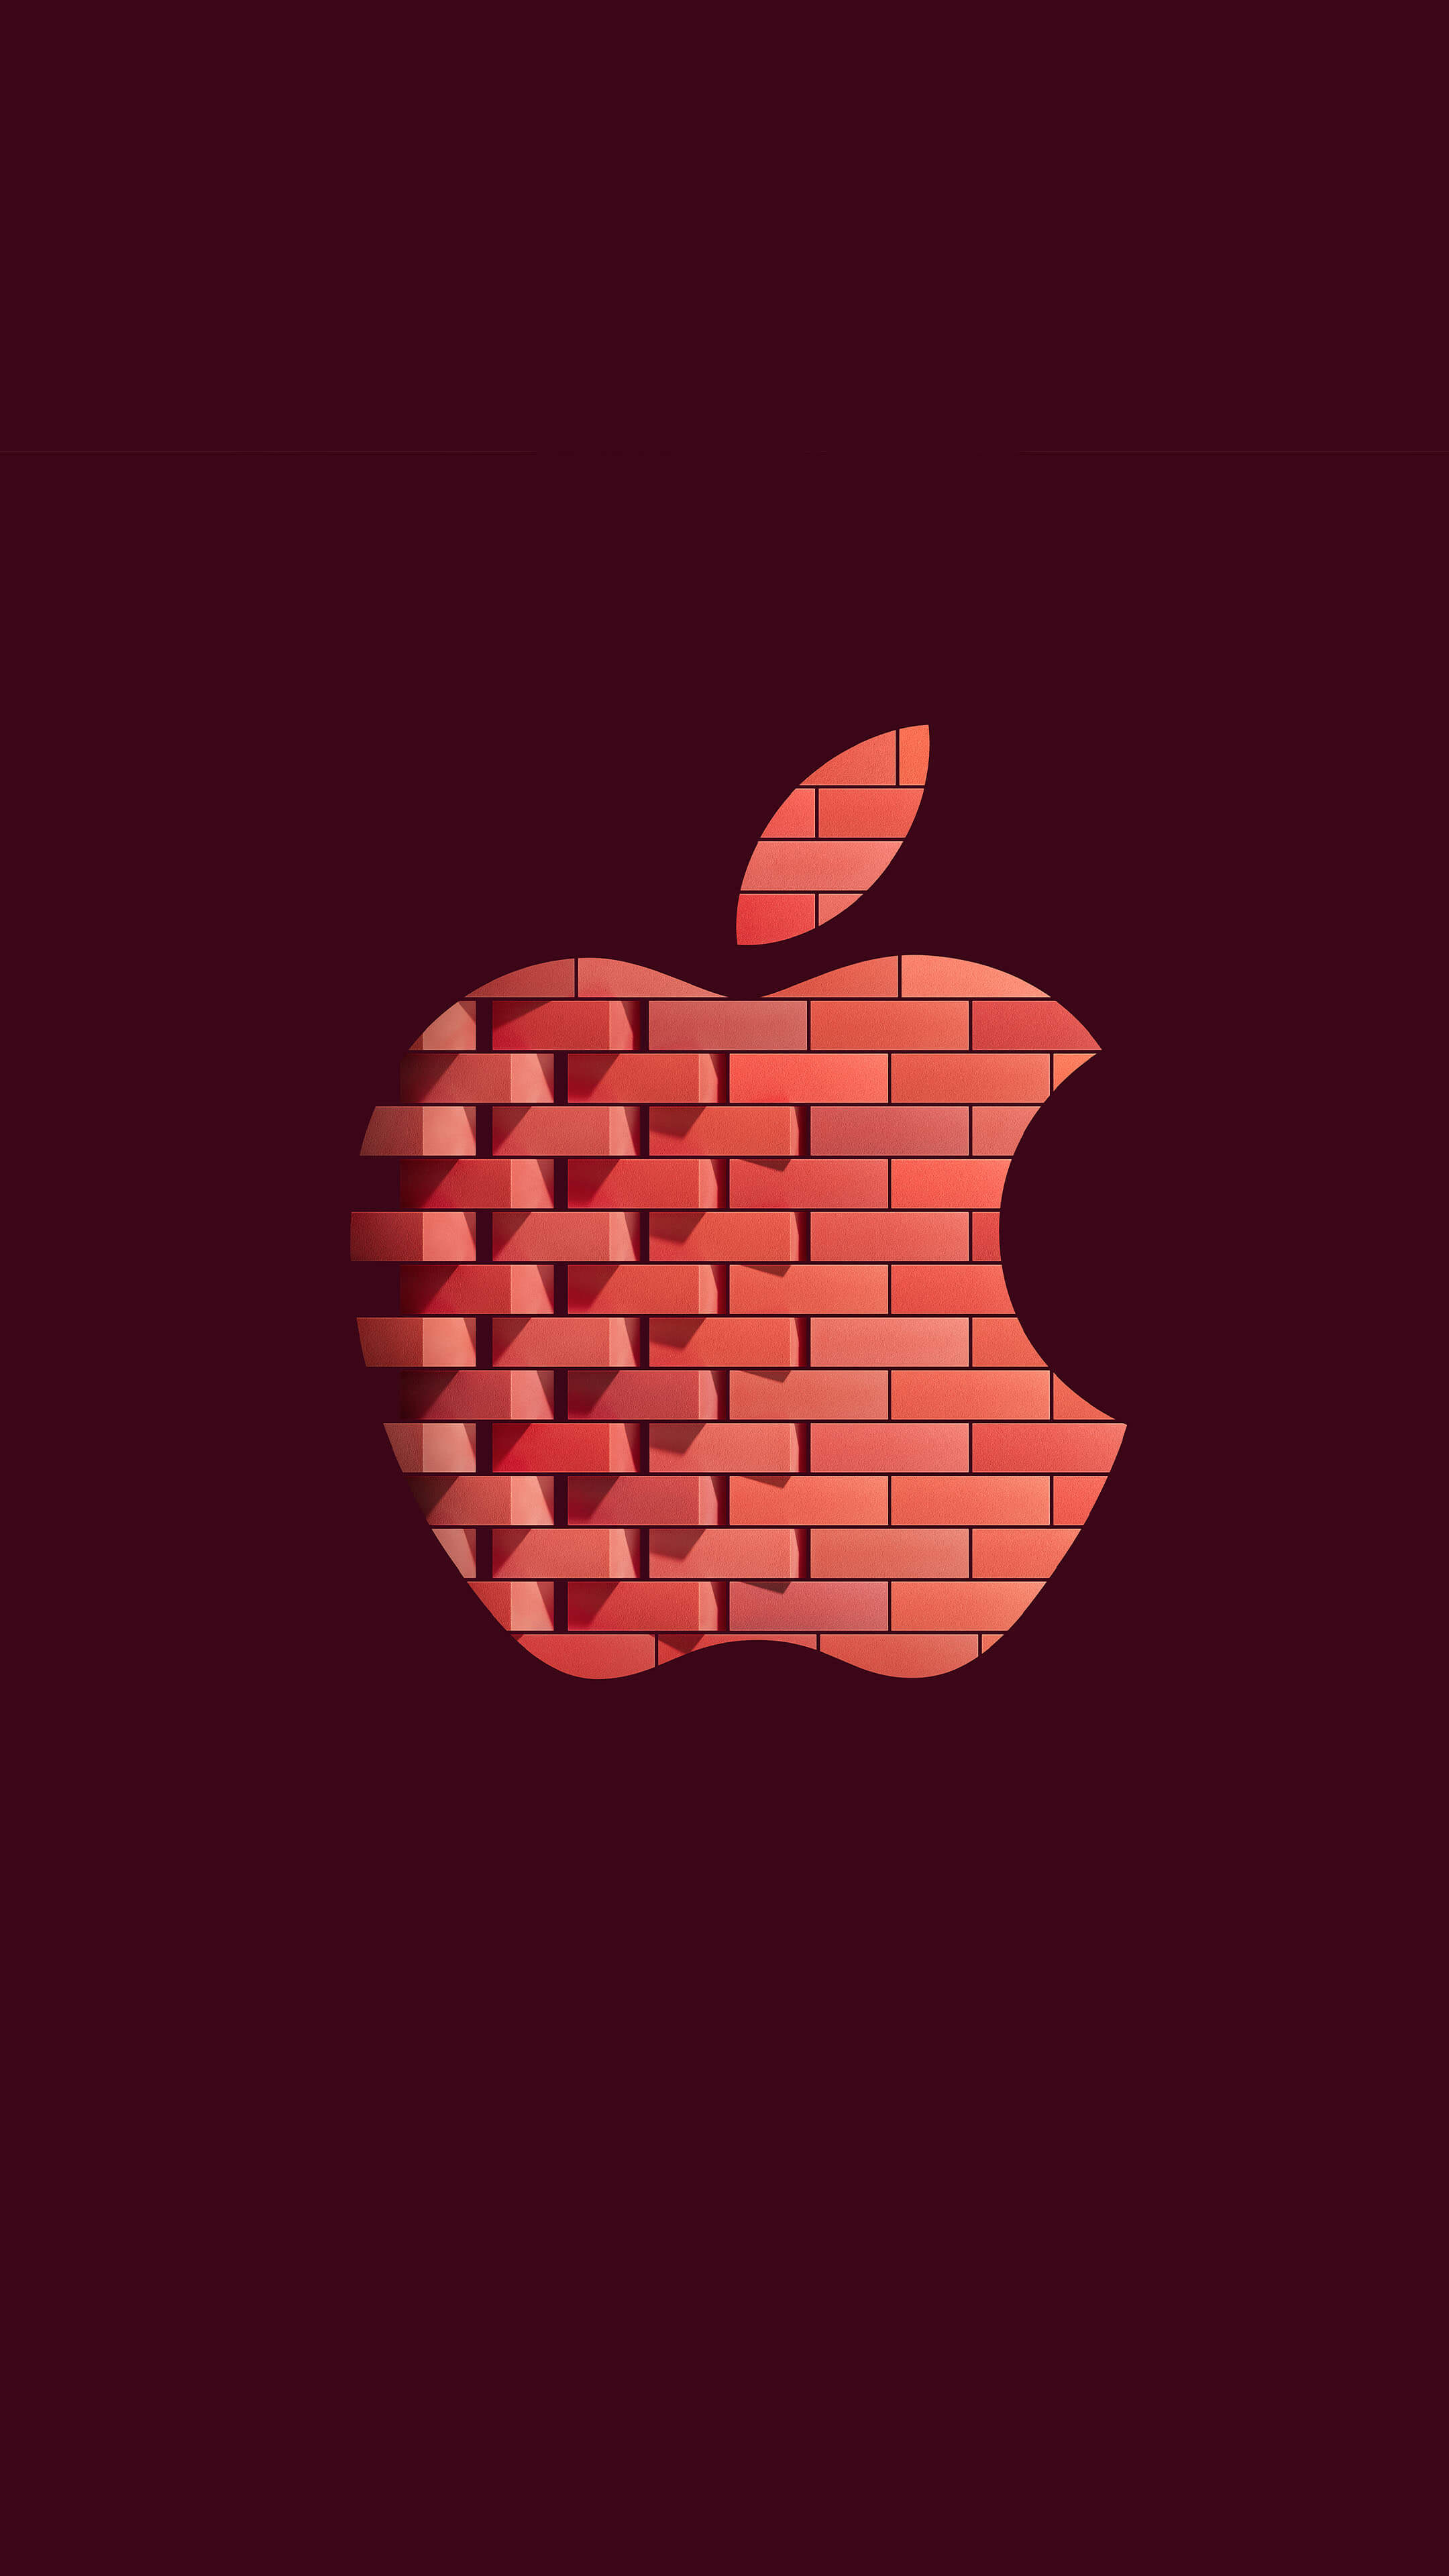 ng07-apple-logo-blue-dark-wallpaper